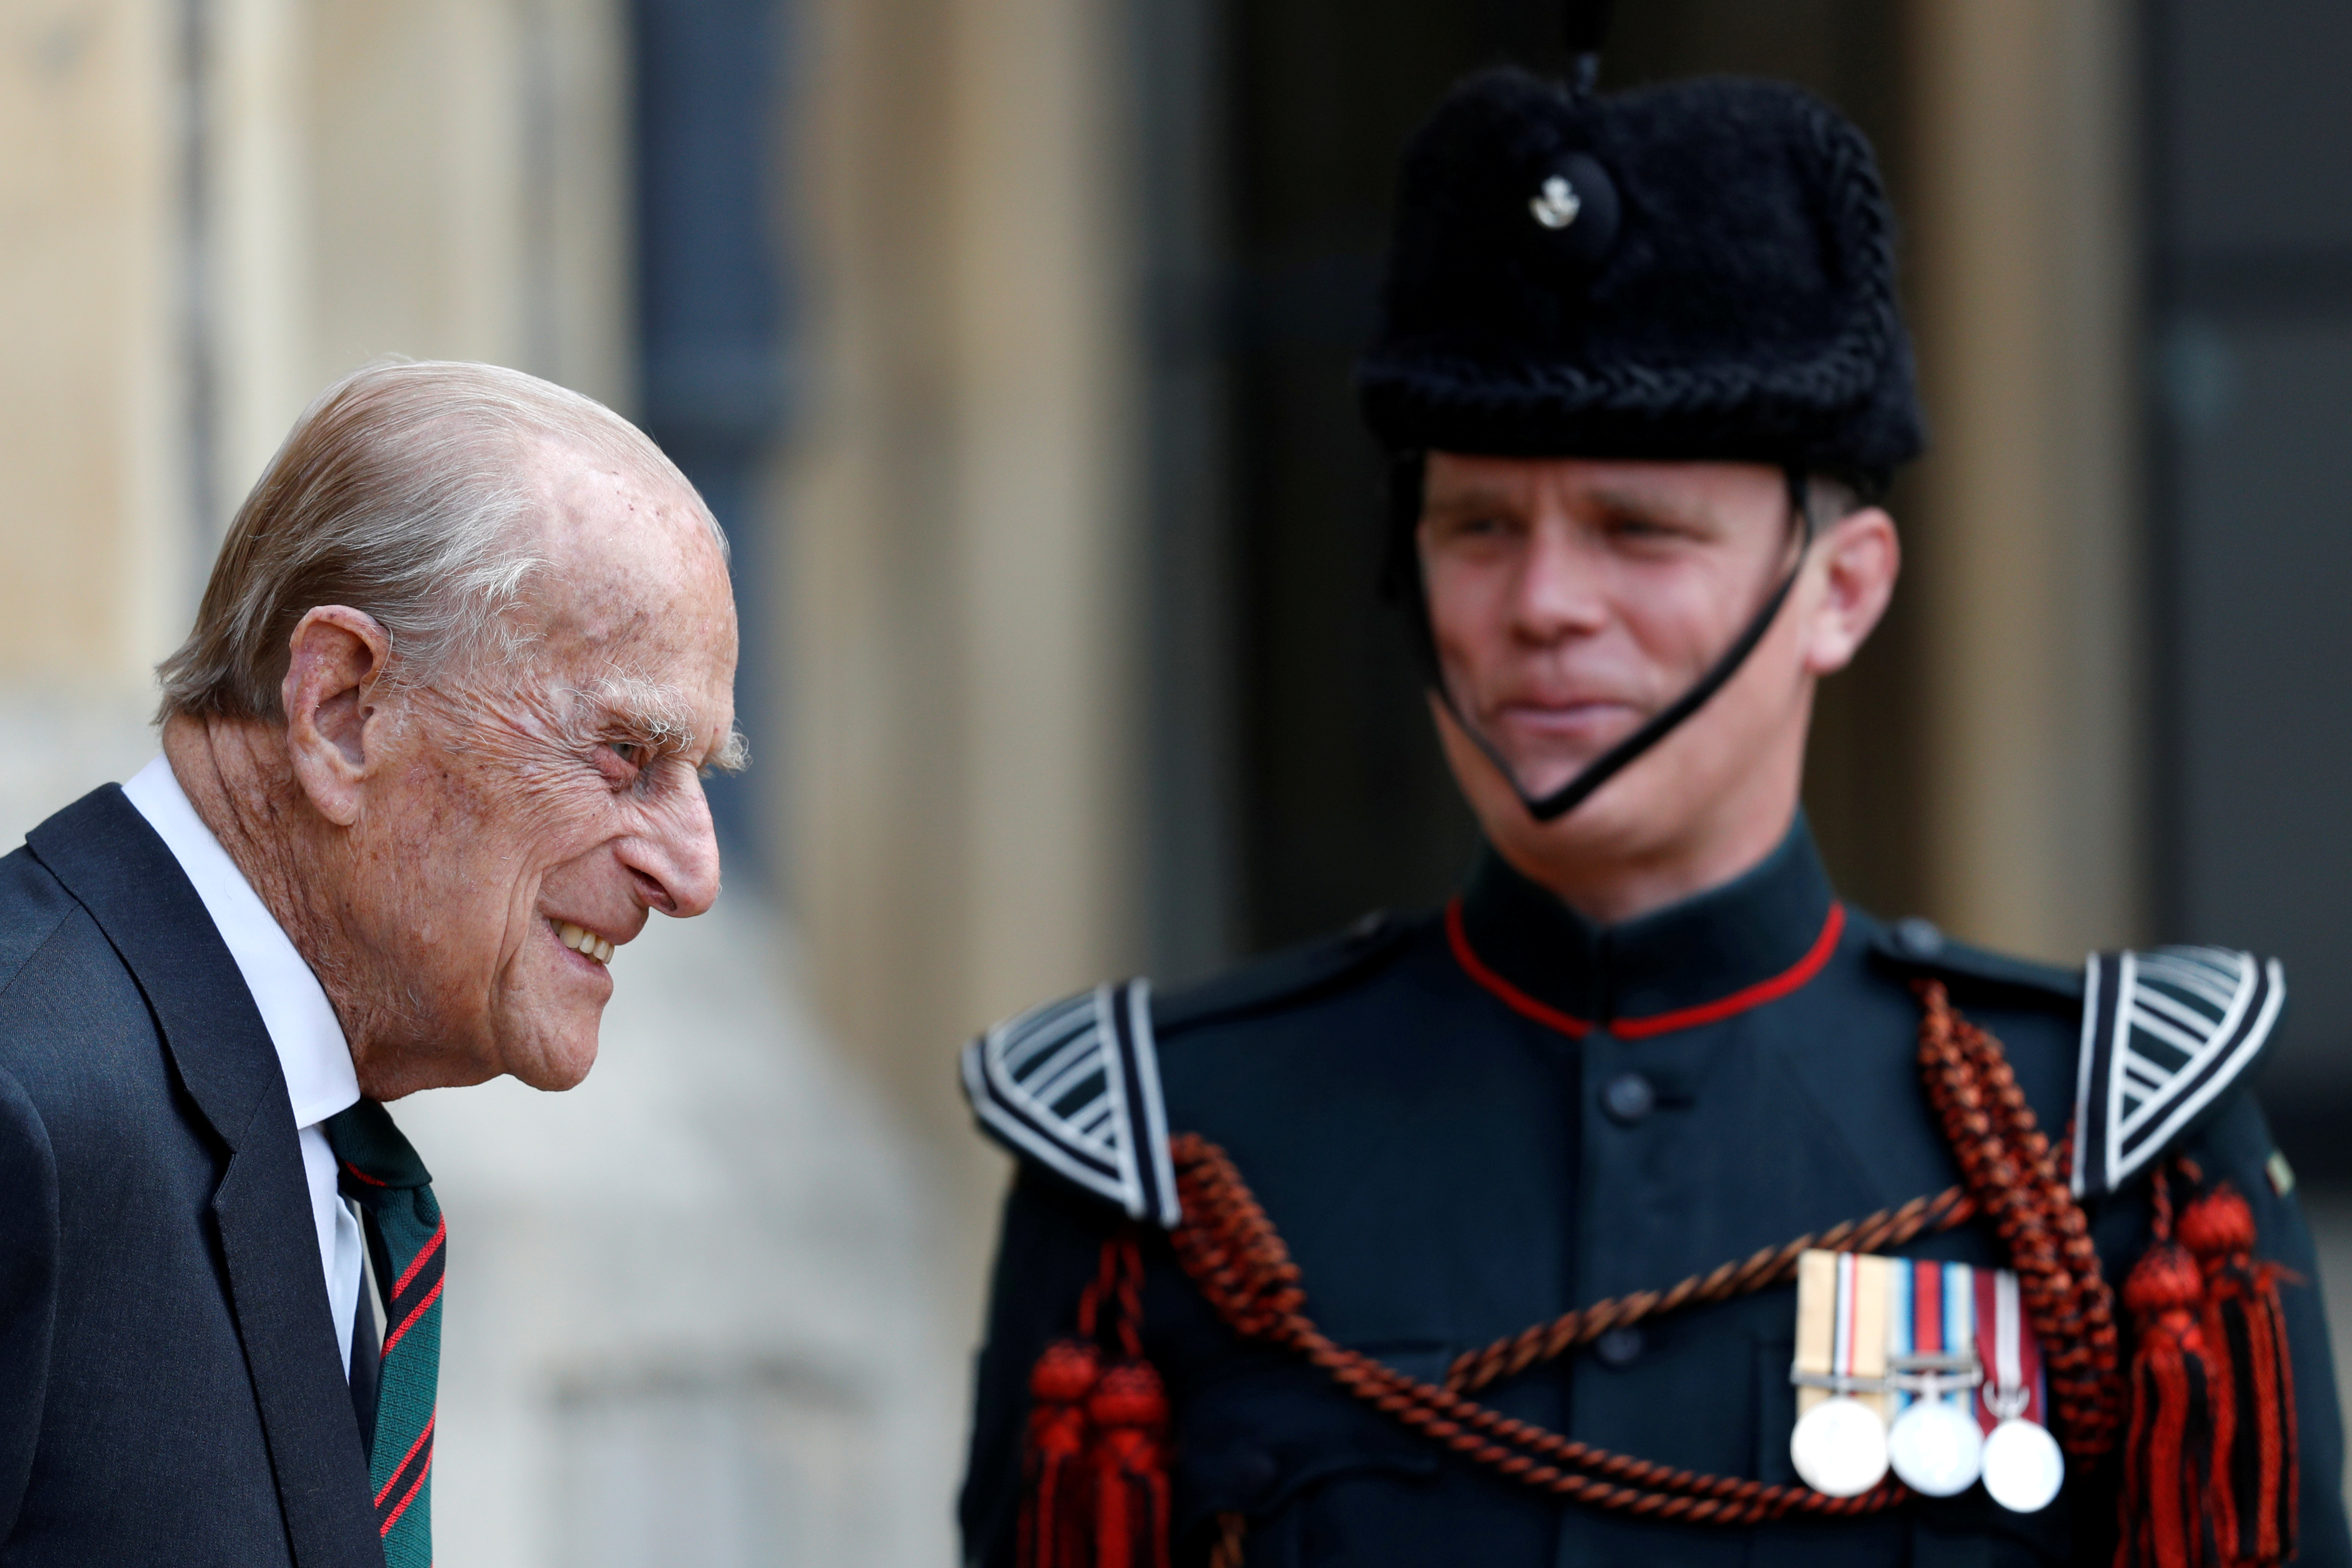 En julio de 2020, el duque de Edimburgo entregó su cargo de coronel en jefe de los Rifles a Camilla Parker Bowles, la esposa del príncipe Carlos, después de 67 años de servicio 